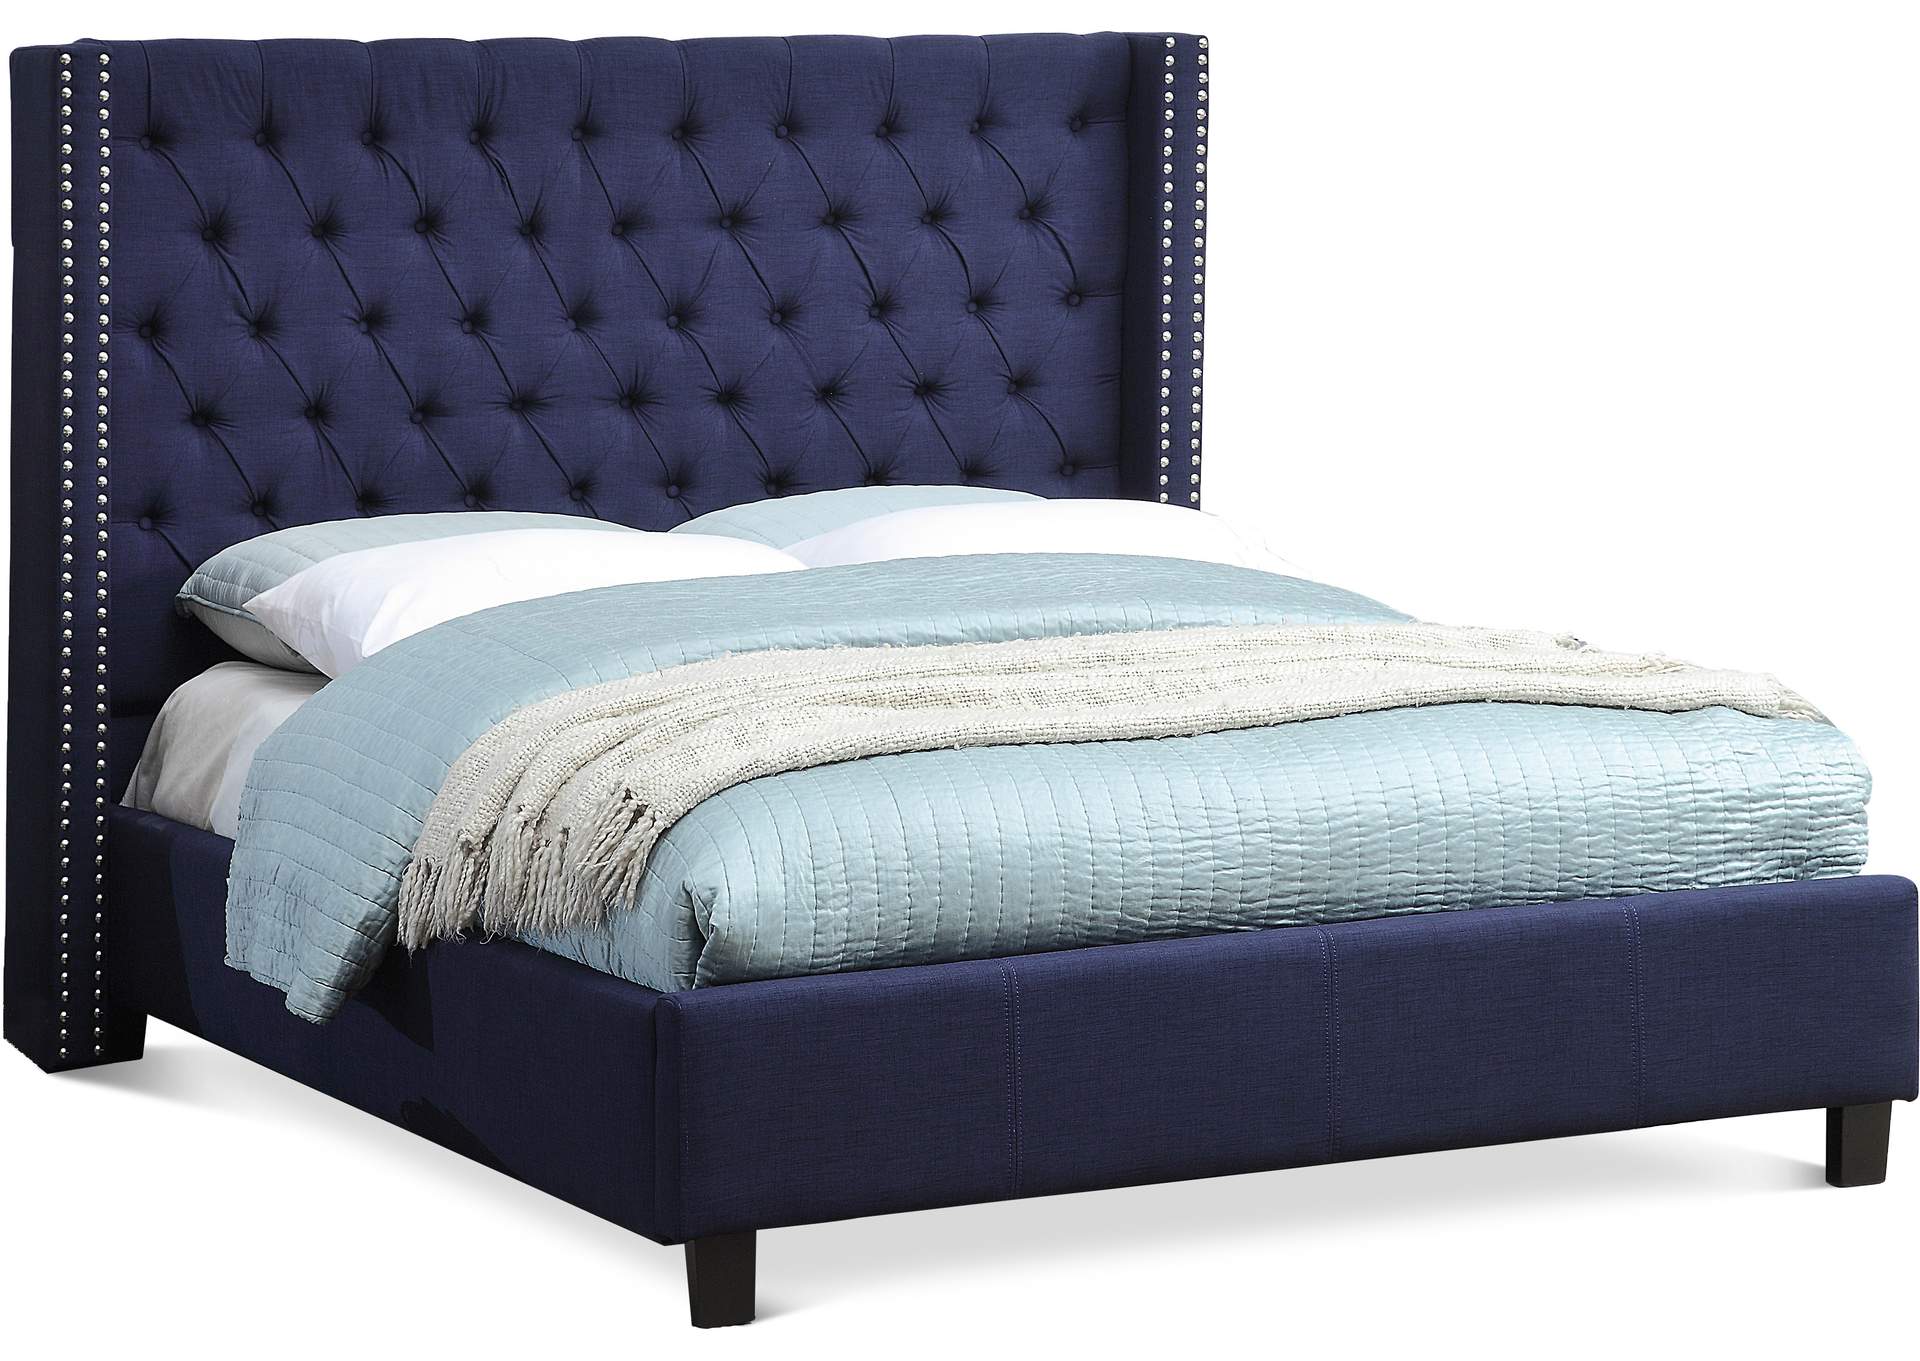 Ashton Navy Linen Textured Full Bed,Meridian Furniture